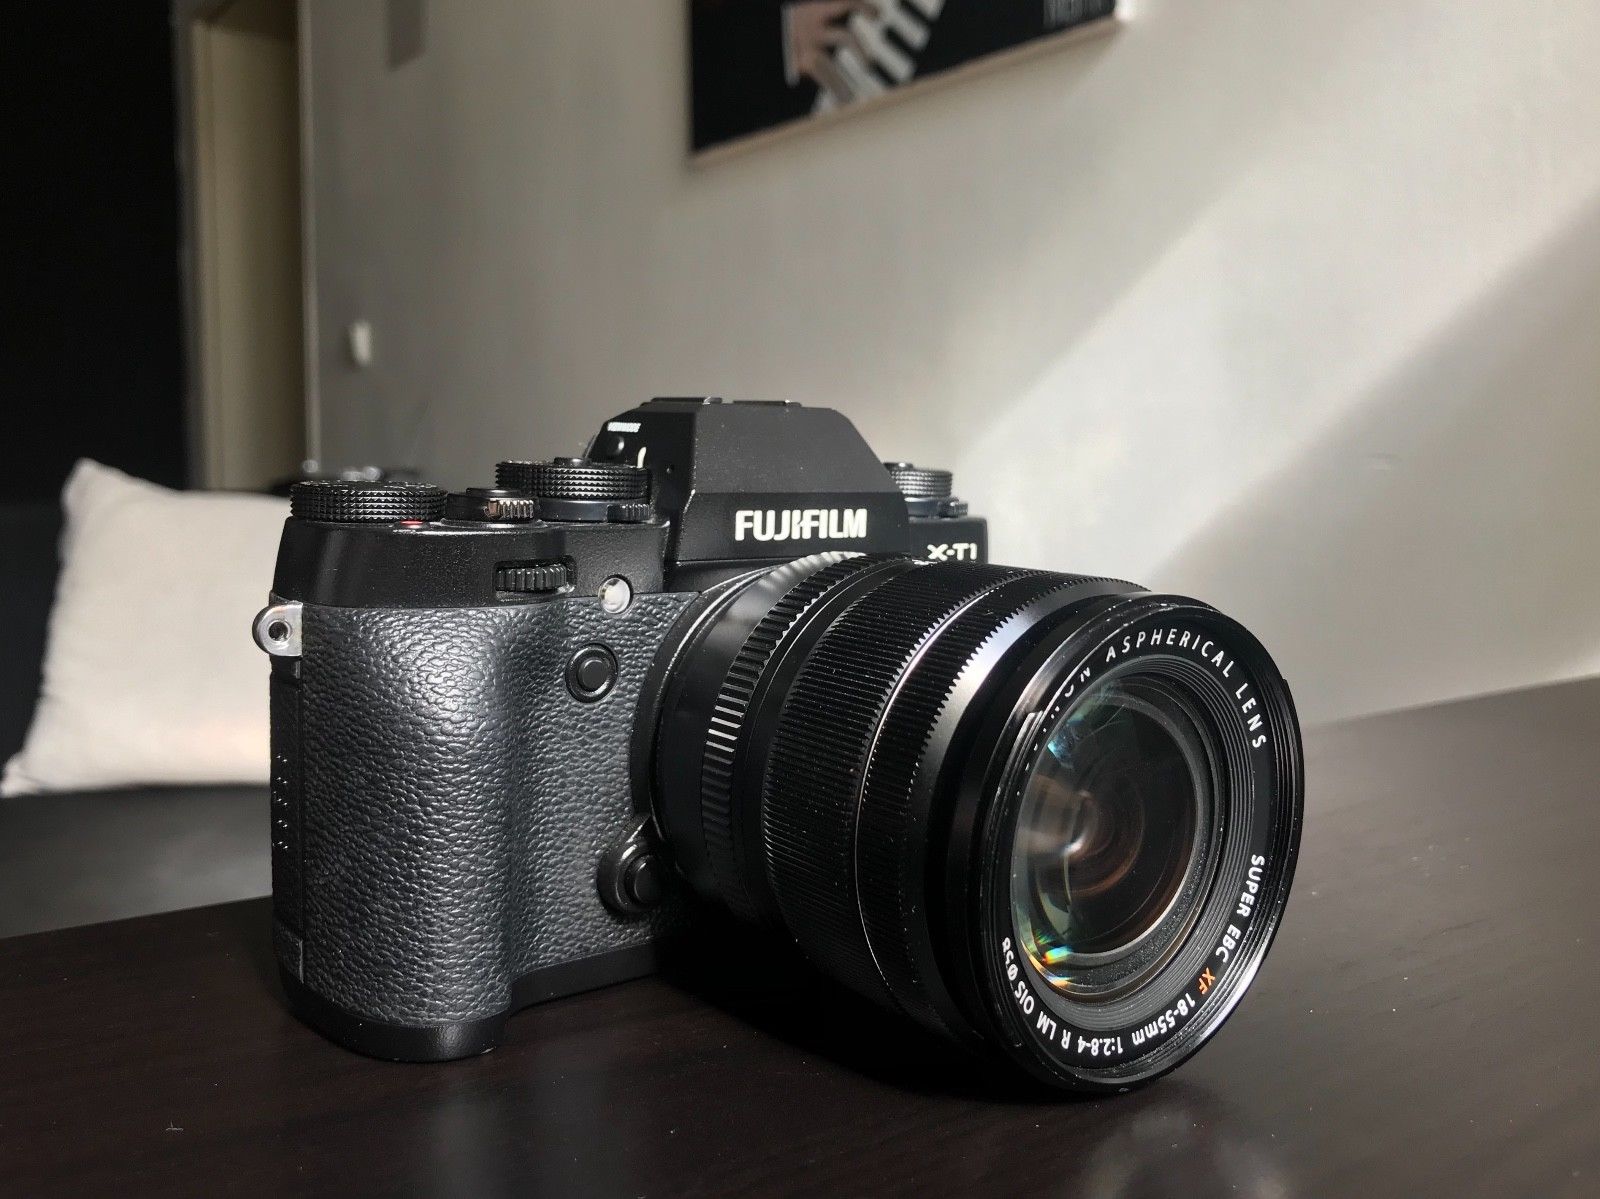 Fujifilm X-T1 | Digitalkamera | Schwarz | Kit XF 18-55mm f/2.8 